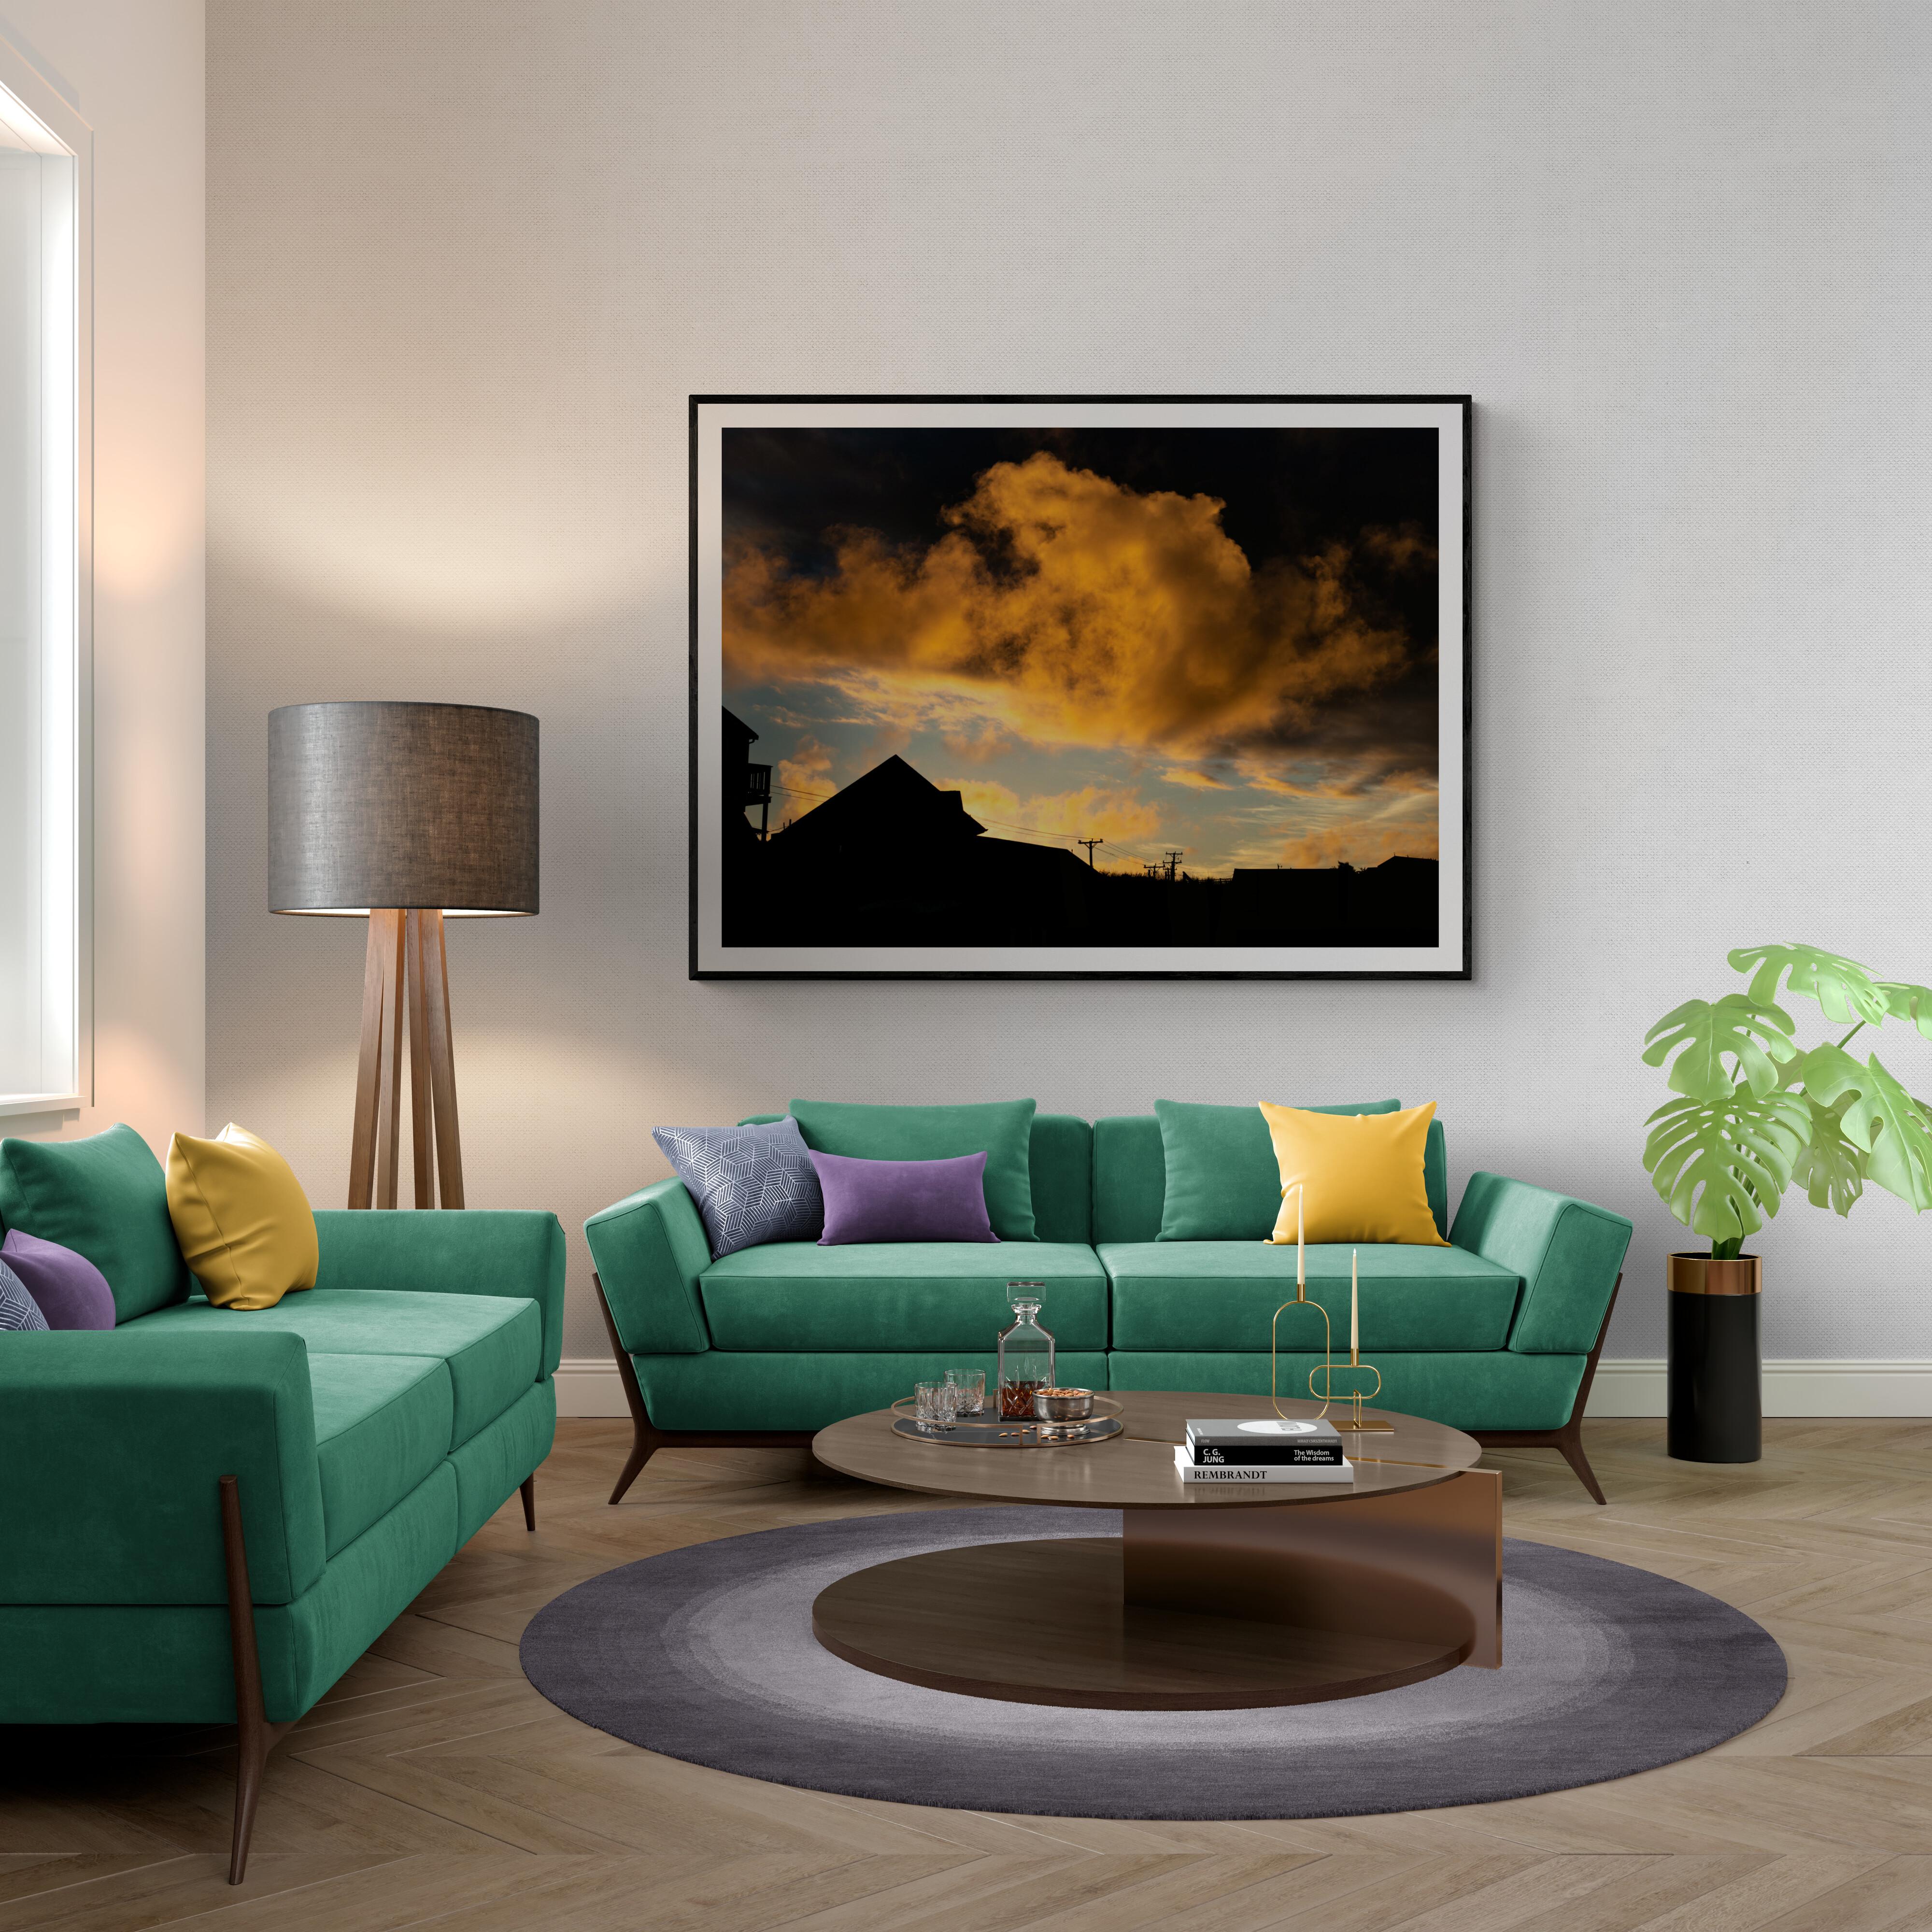 Farbfotografie in limitierter Auflage – „Fire Cloud“ 20 x 24 – Photograph von Howard Lewis